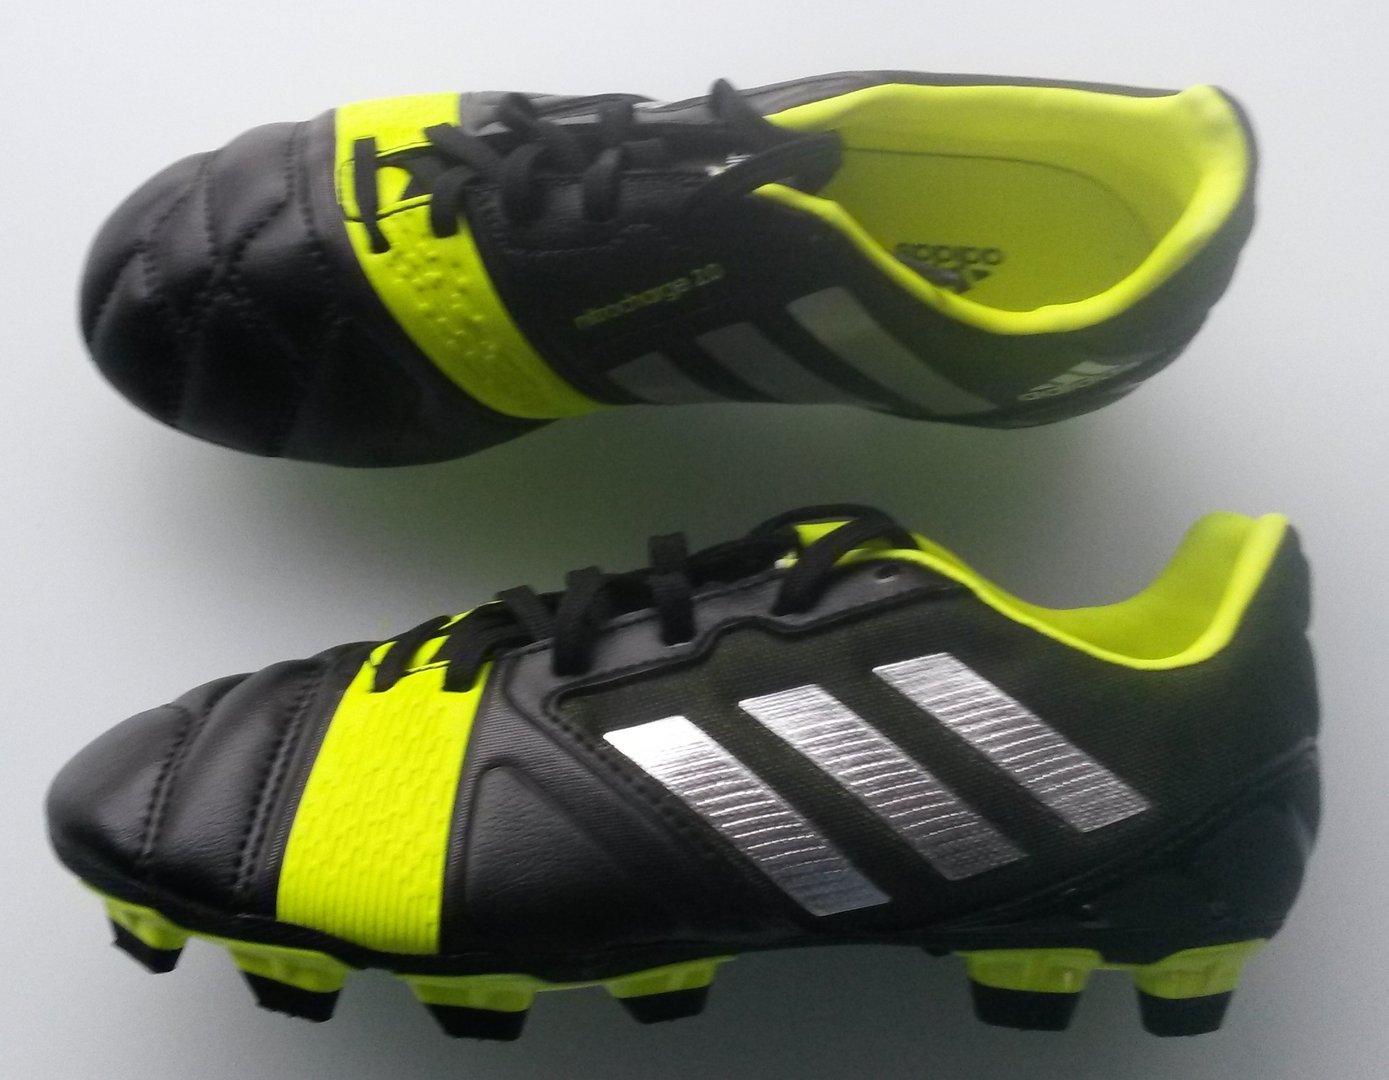 Adidas Nitrocharge 2.0 football boots 